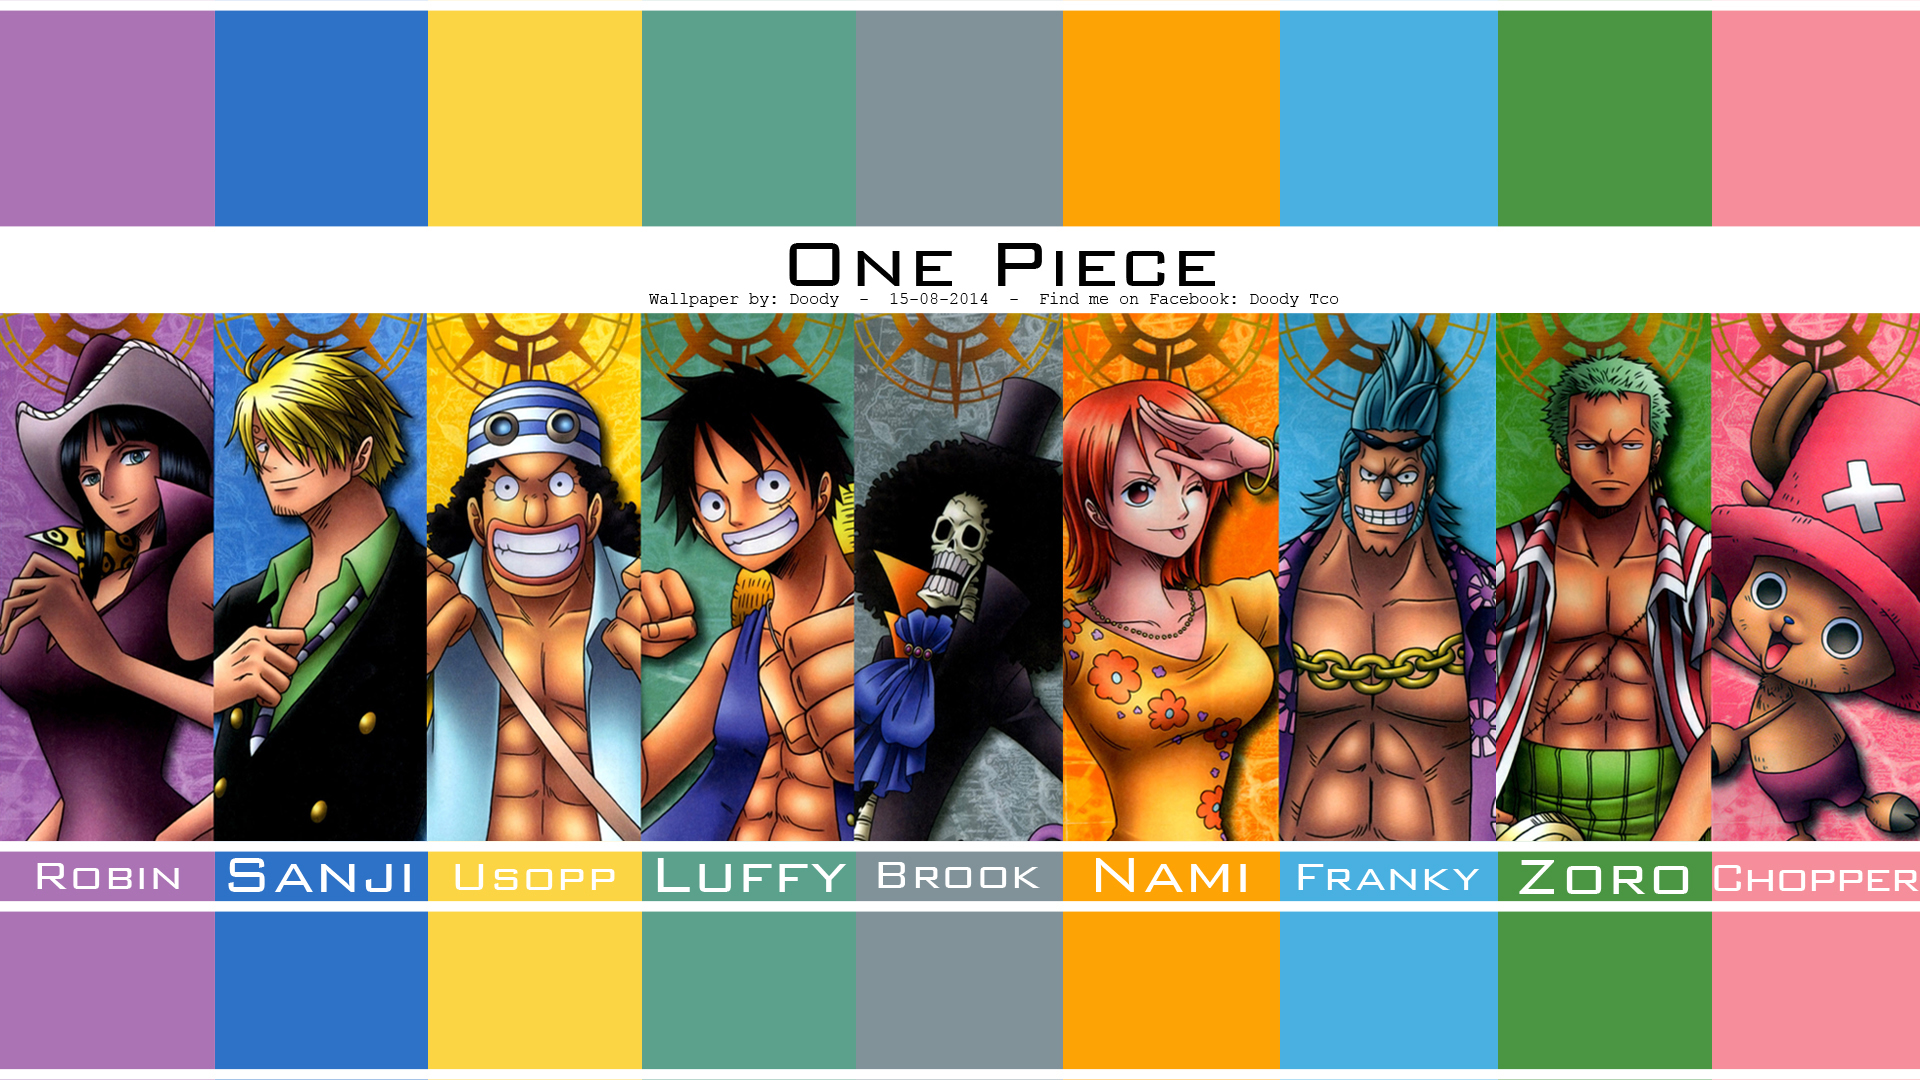 One Piece Wallpaper - One Piece Calendar 2011 - HD Wallpaper 